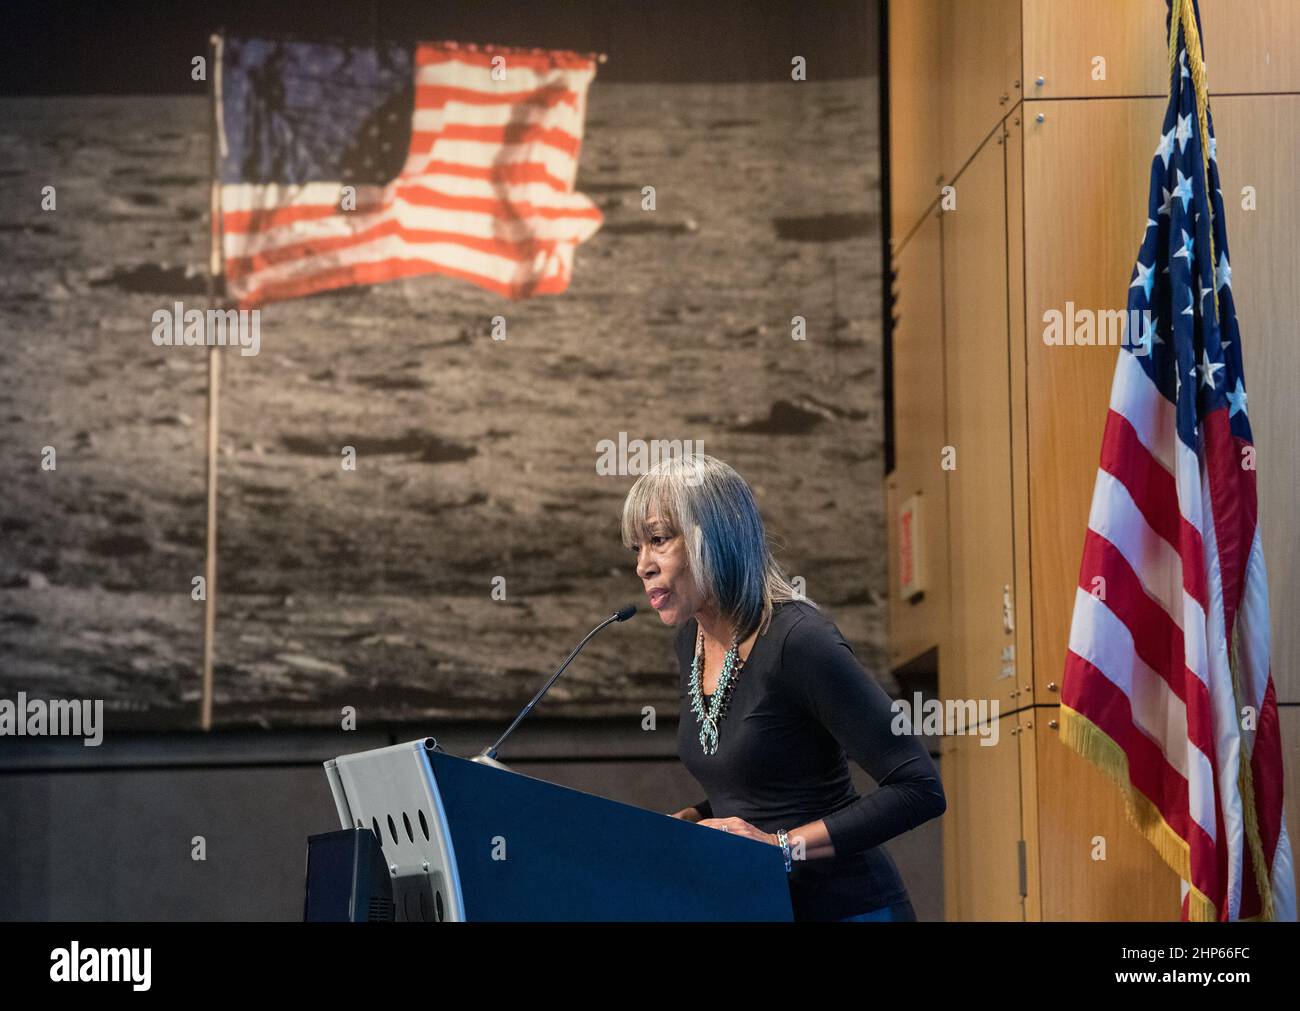 Dr. Phoebe Farris, Stamm Powhatan-Pamunkey, spricht bei einer Namenszeremonie für 2014 MU69, einen Himmelskörper, der von der Mission New Horizons und dem Weltraumteleskop Hubble entdeckt wurde, der früher den Spitznamen „Ultima Thule“ trug, am Dienstag, den 12. November 2019, im NASA-Hauptquartier in Washington. Der neue Name „Arrokoth“ bedeutet „Himmel“ und stammt aus den Algonquian-Sprachen, die von den Powhatan-Stämmen der Region Maryland gesprochen werden, in der sie entdeckt wurde. Stockfoto